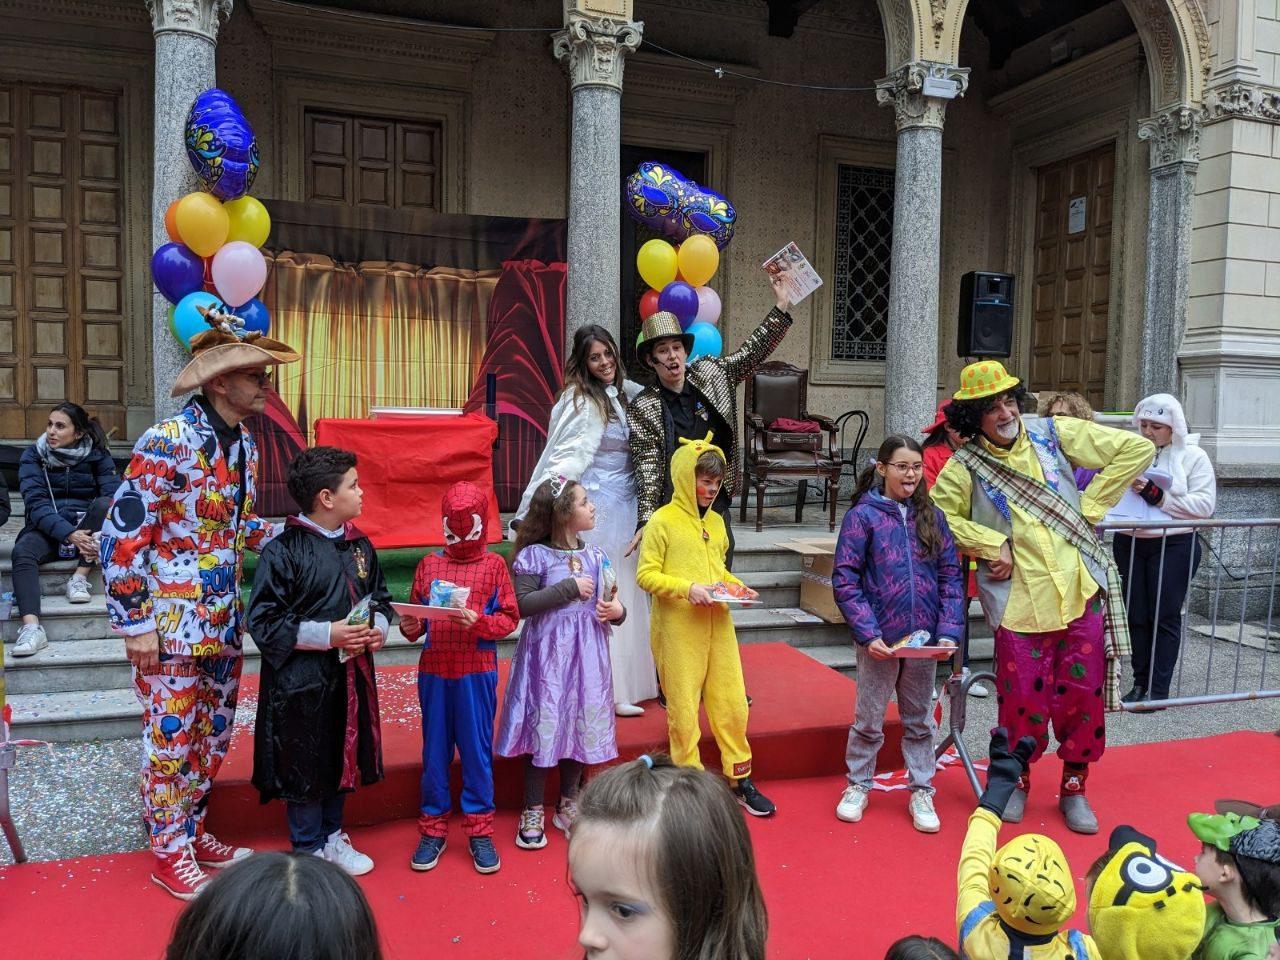 Carnevale a Saronno, Harry Potter, Pippi calzelunghe, Wednesday Addams e Harley  Quinn: oltre cento mascherine in Villa Gianetti - Il Saronno